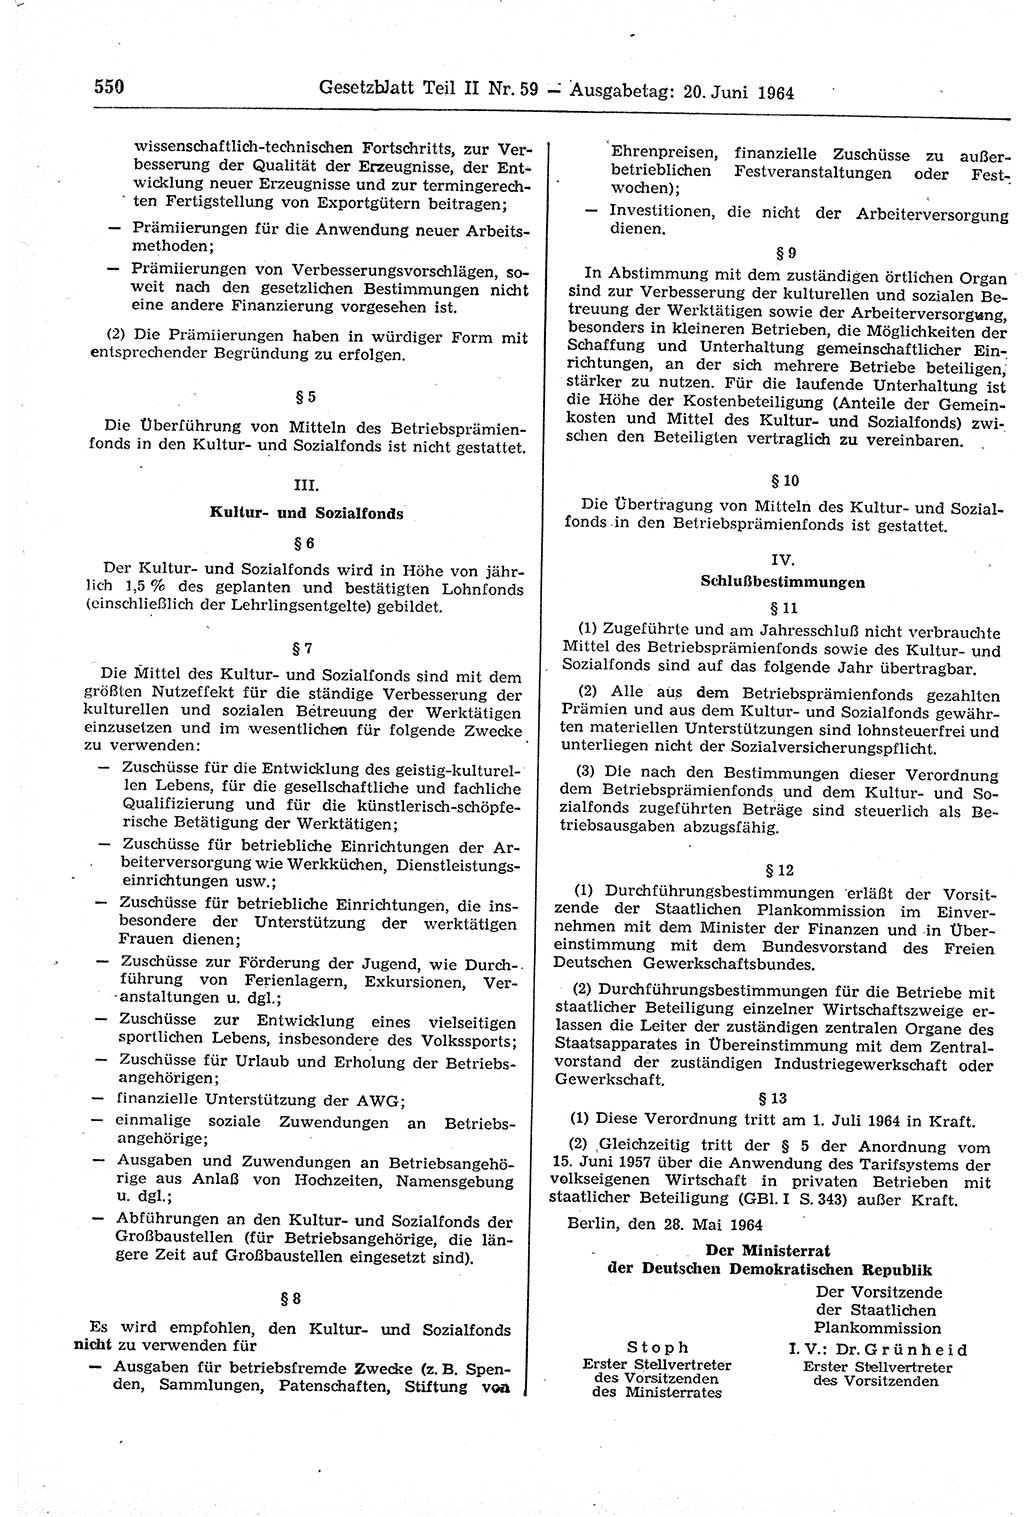 Gesetzblatt (GBl.) der Deutschen Demokratischen Republik (DDR) Teil ⅠⅠ 1964, Seite 550 (GBl. DDR ⅠⅠ 1964, S. 550)